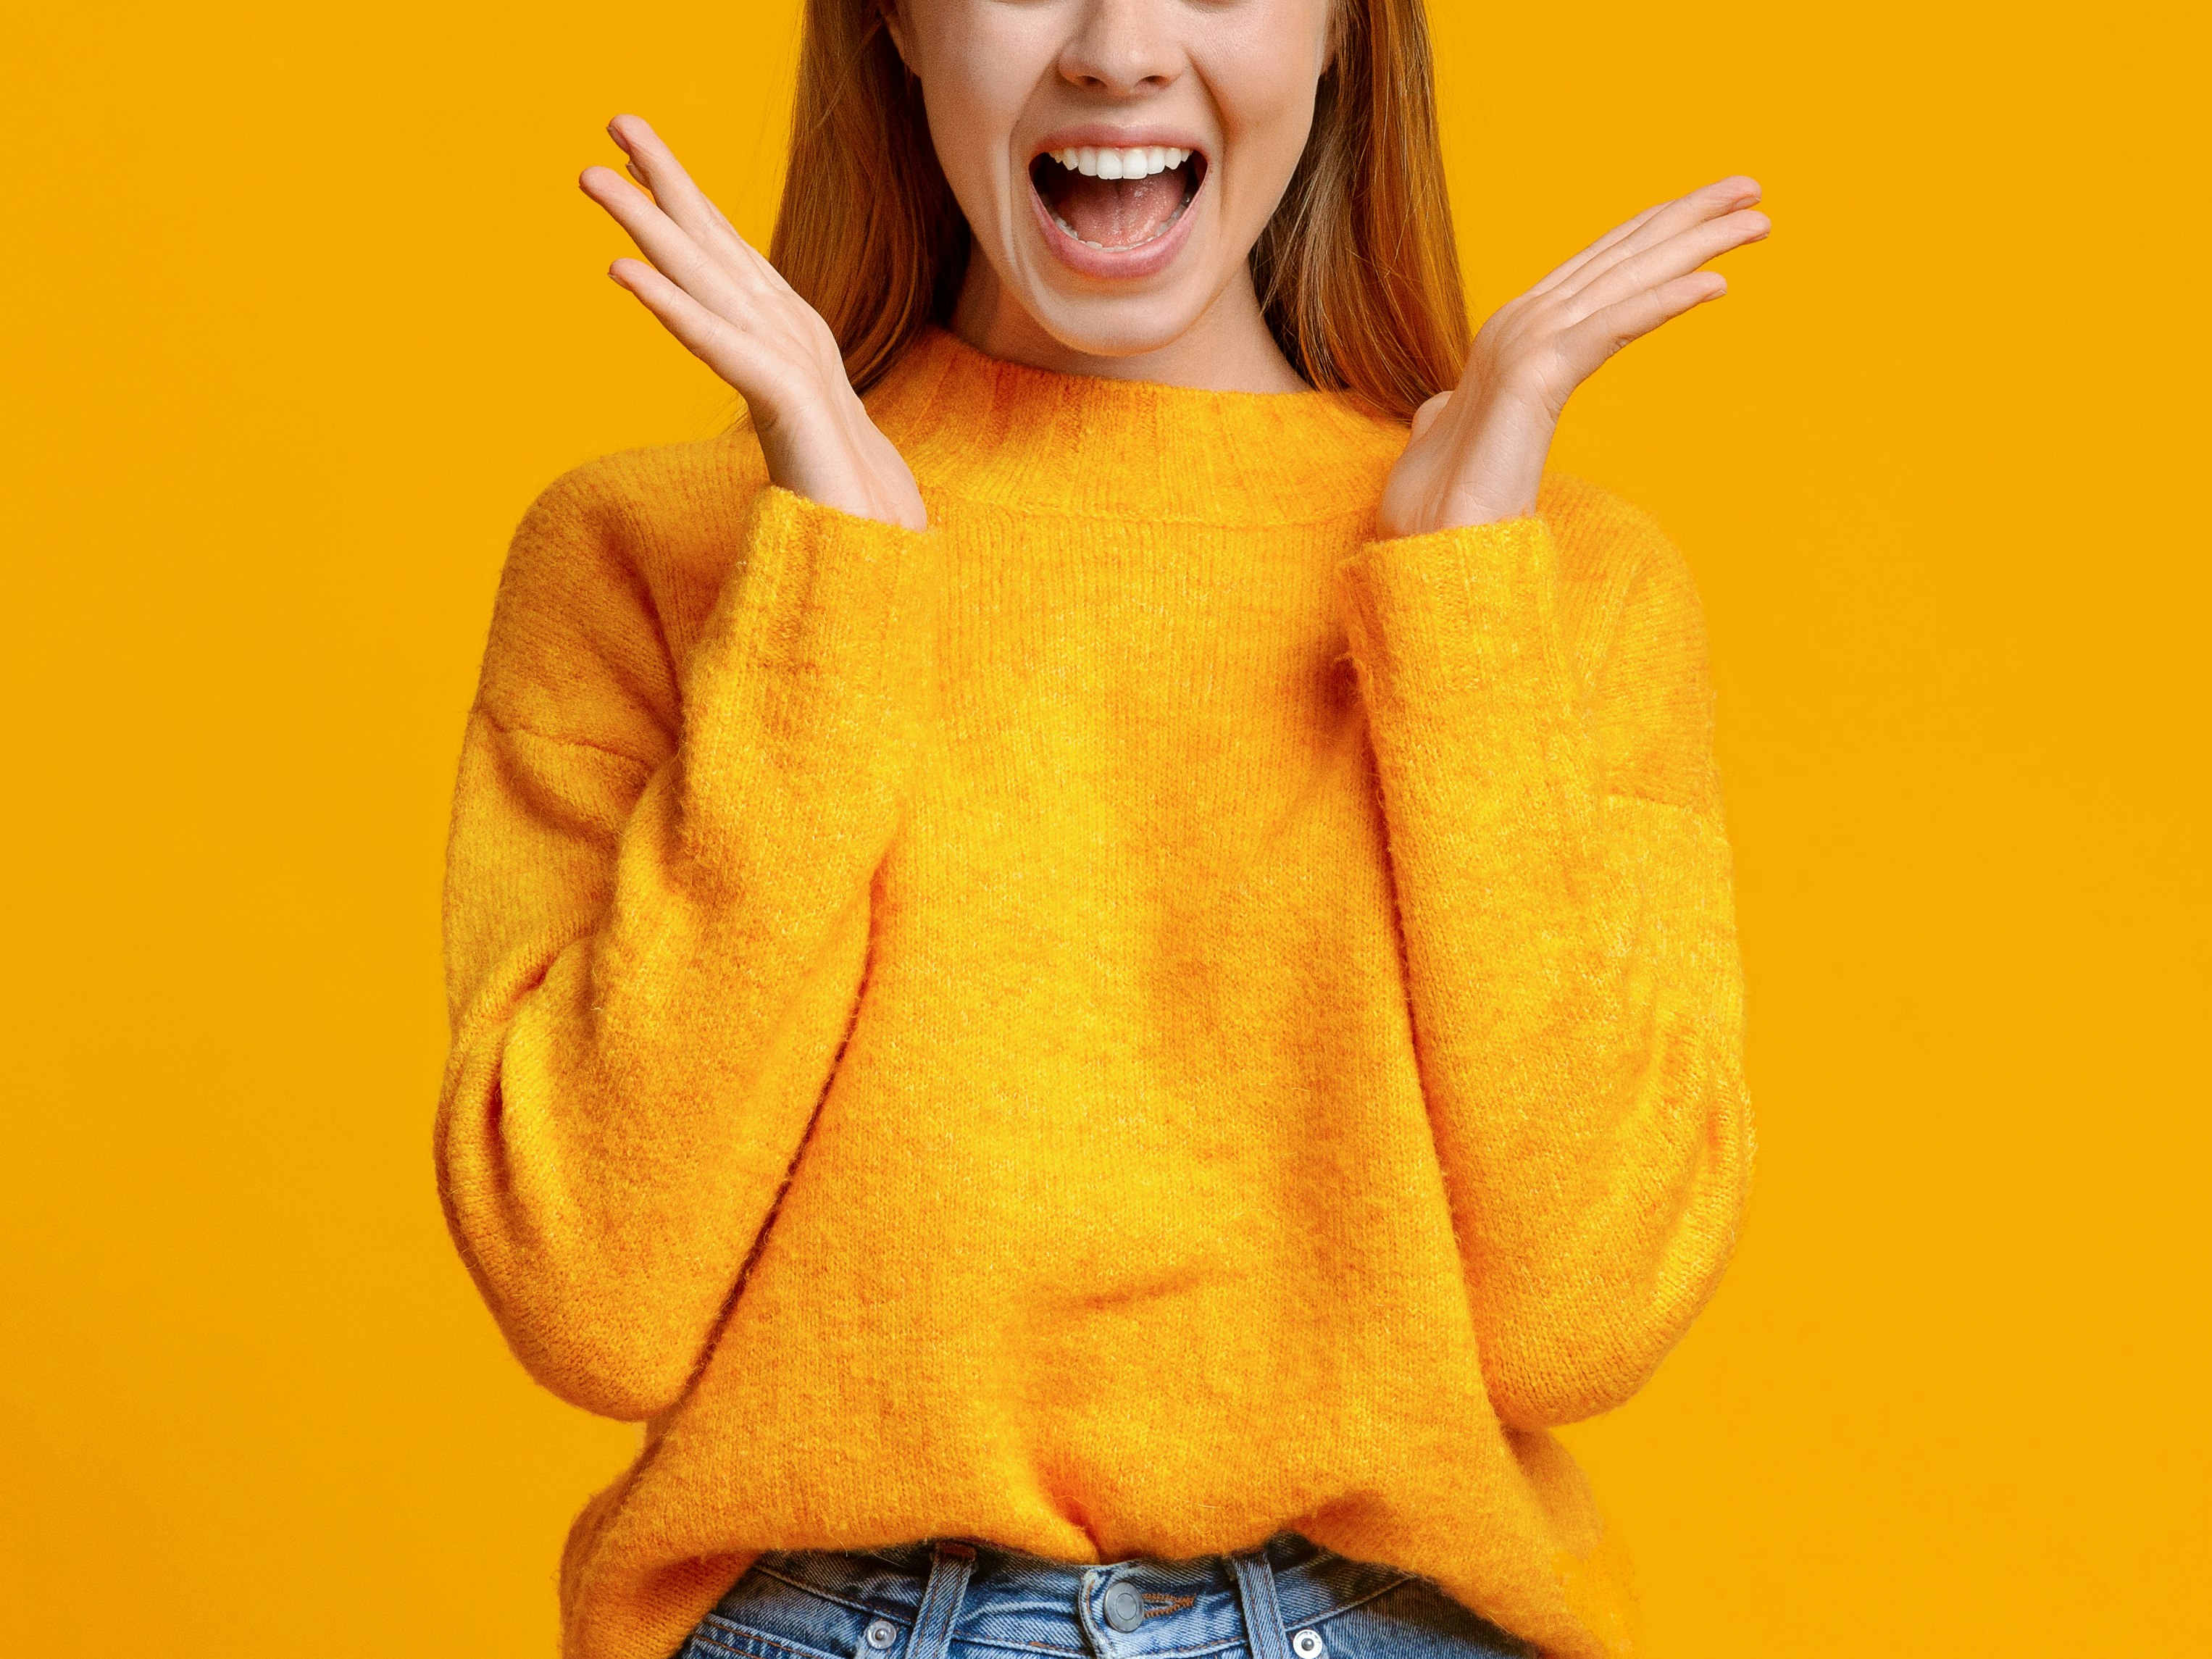 Blond kvinne i orange genser med overrasket uttrykk og åpen munn mot orange bakgrunn.